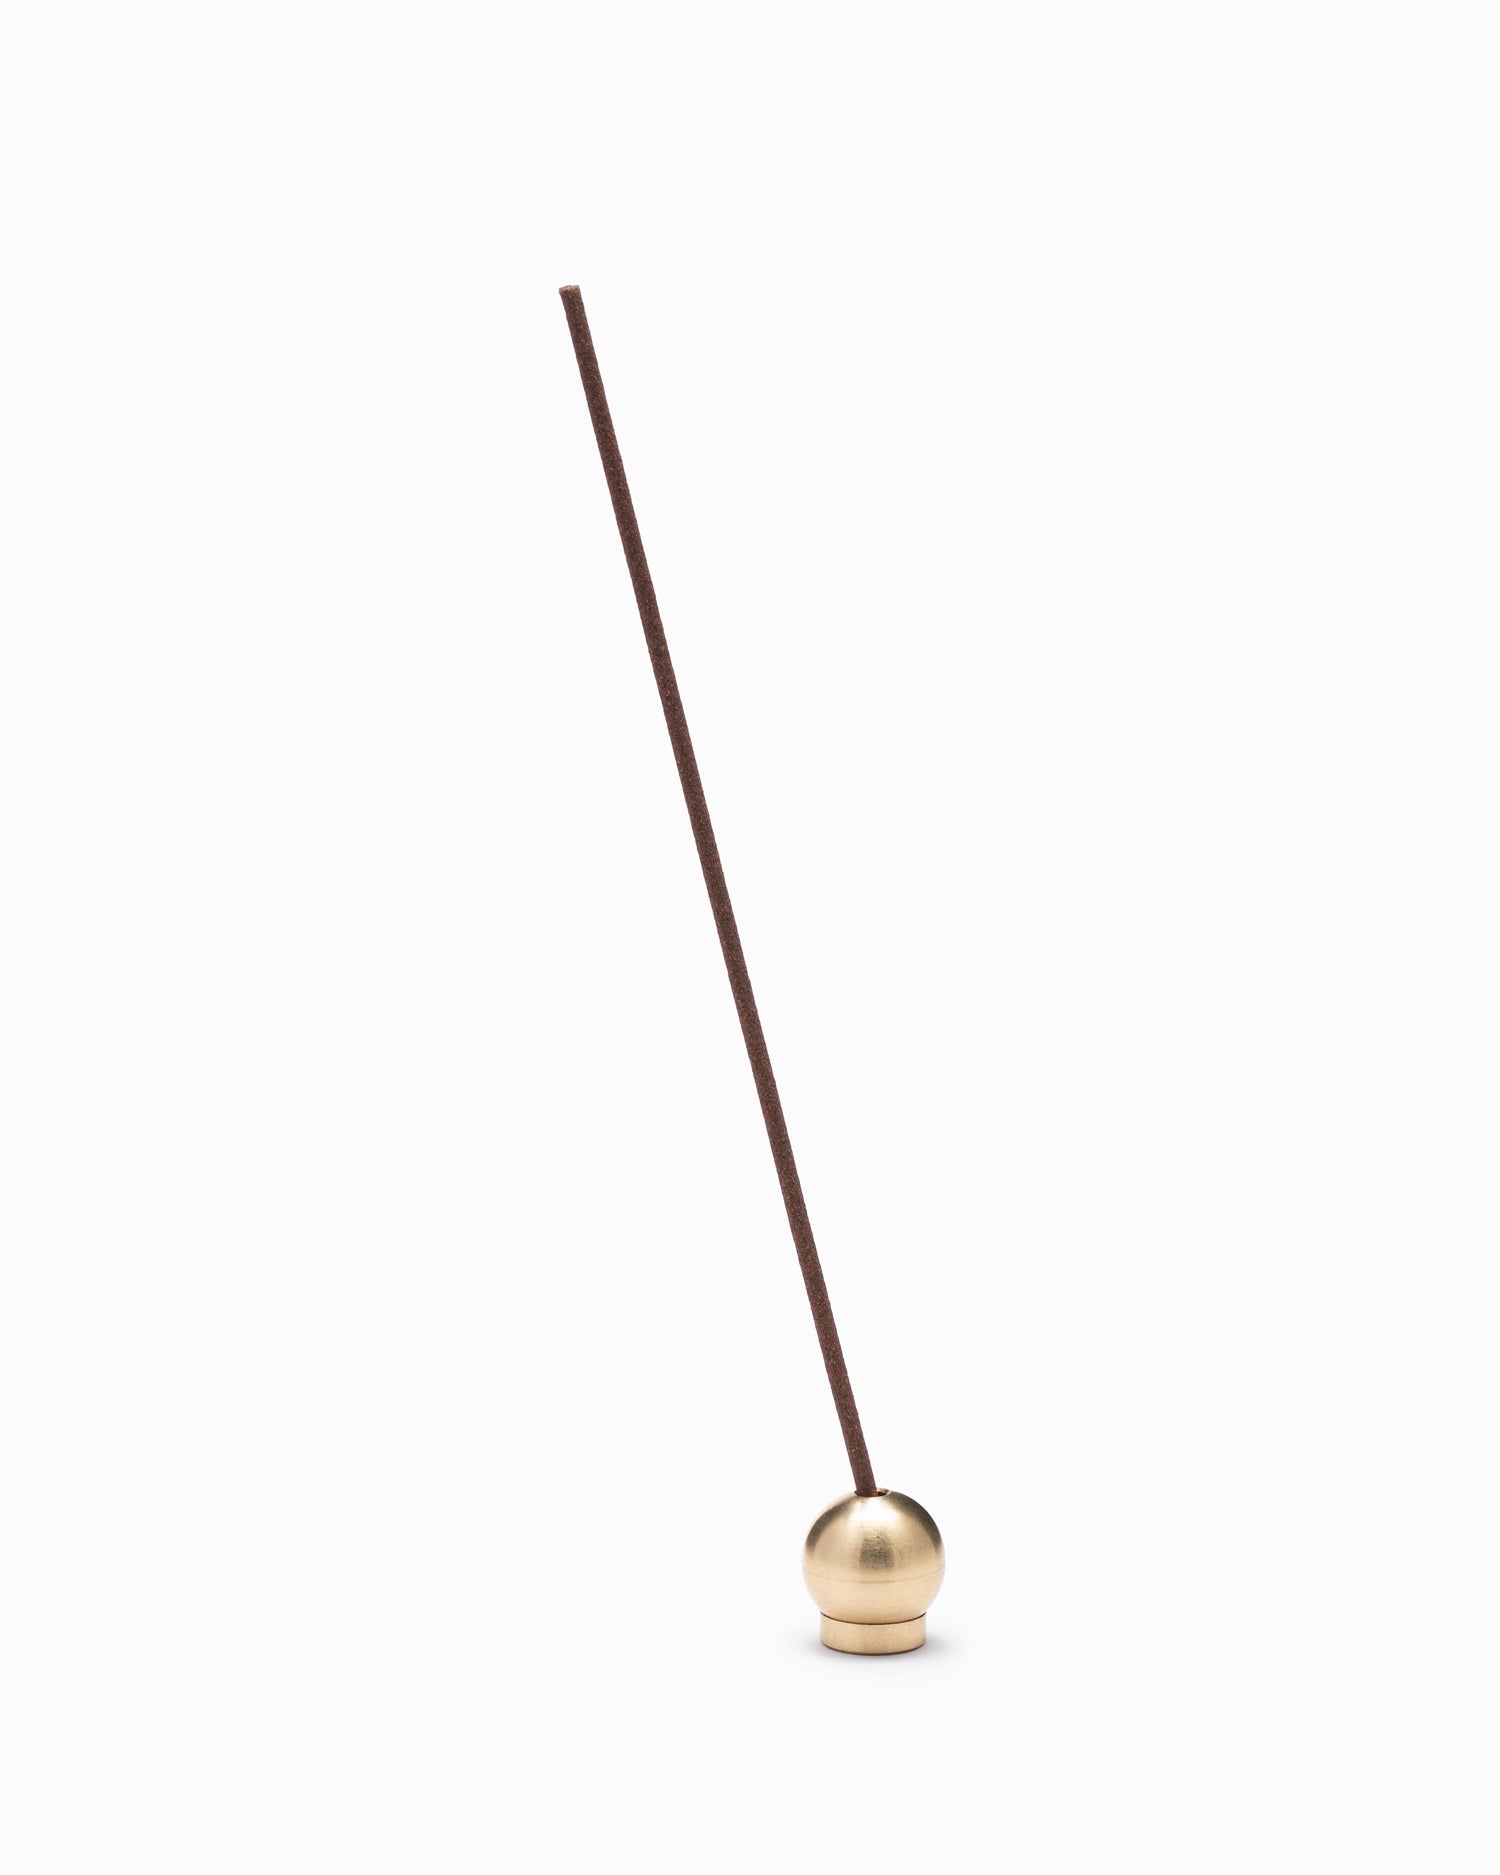 Japanese Brass Ball Incense Holder